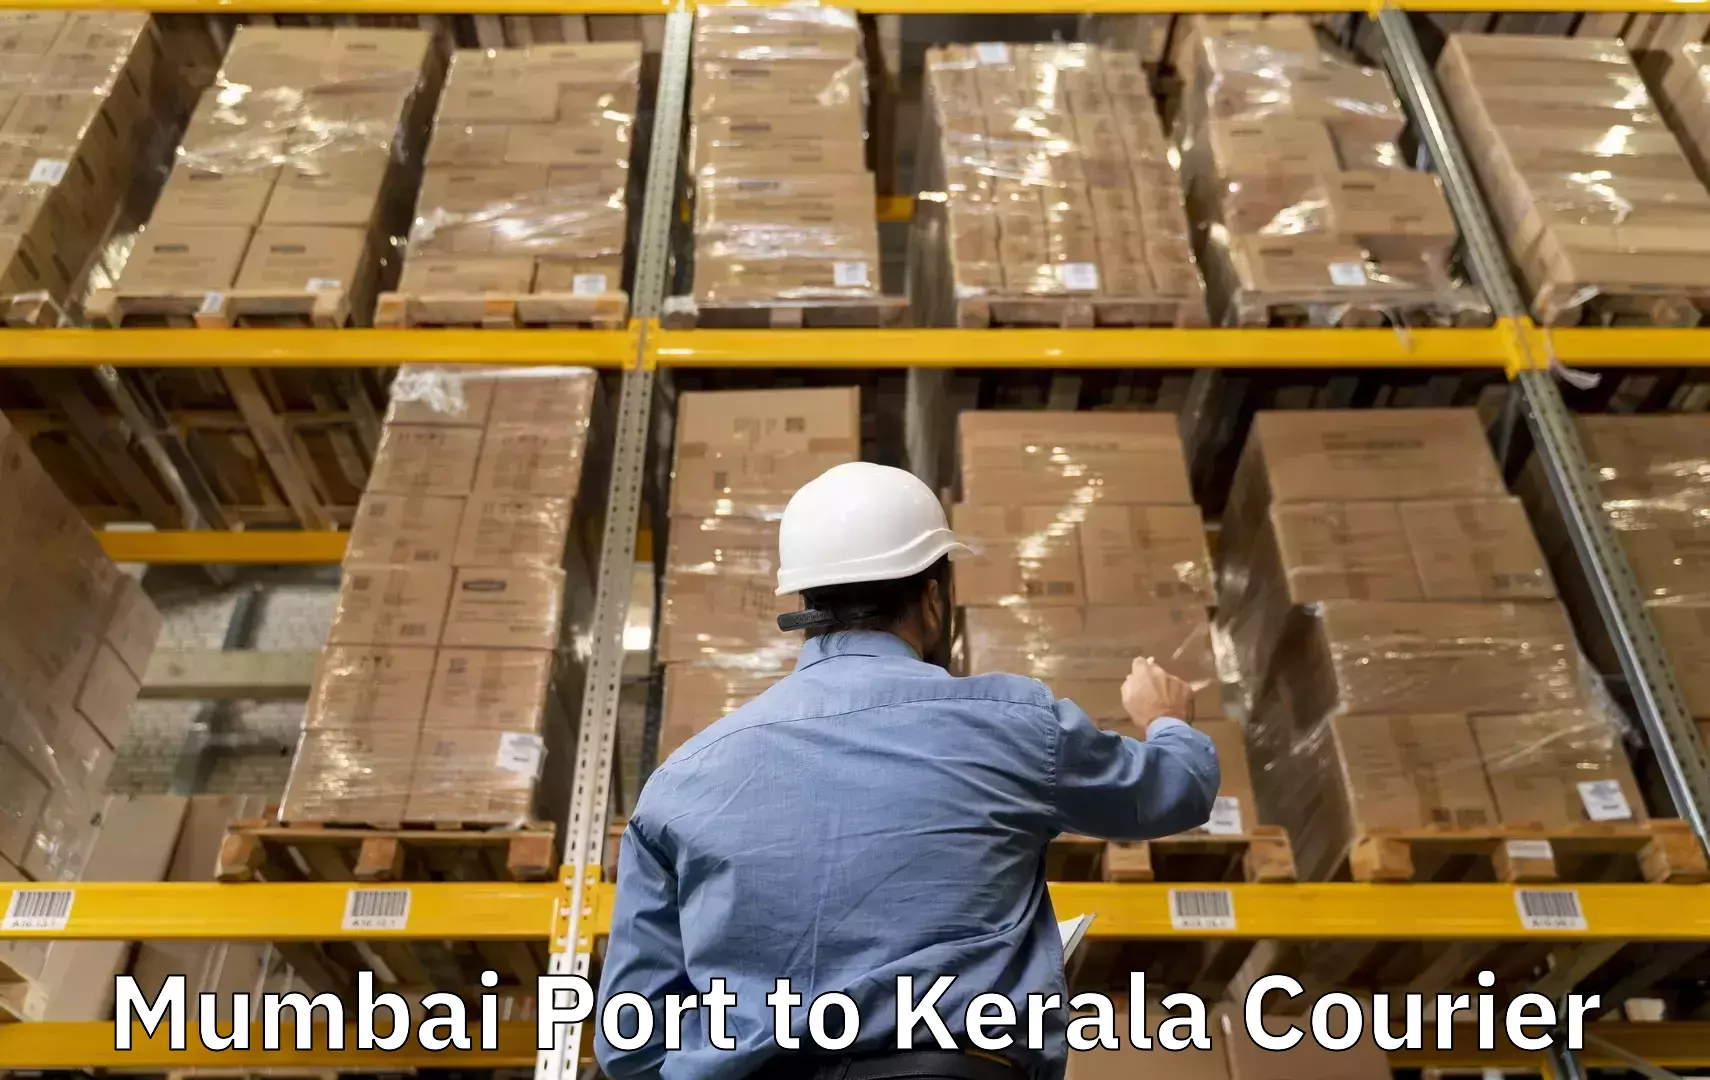 Nationwide luggage courier Mumbai Port to Neyyattinkara